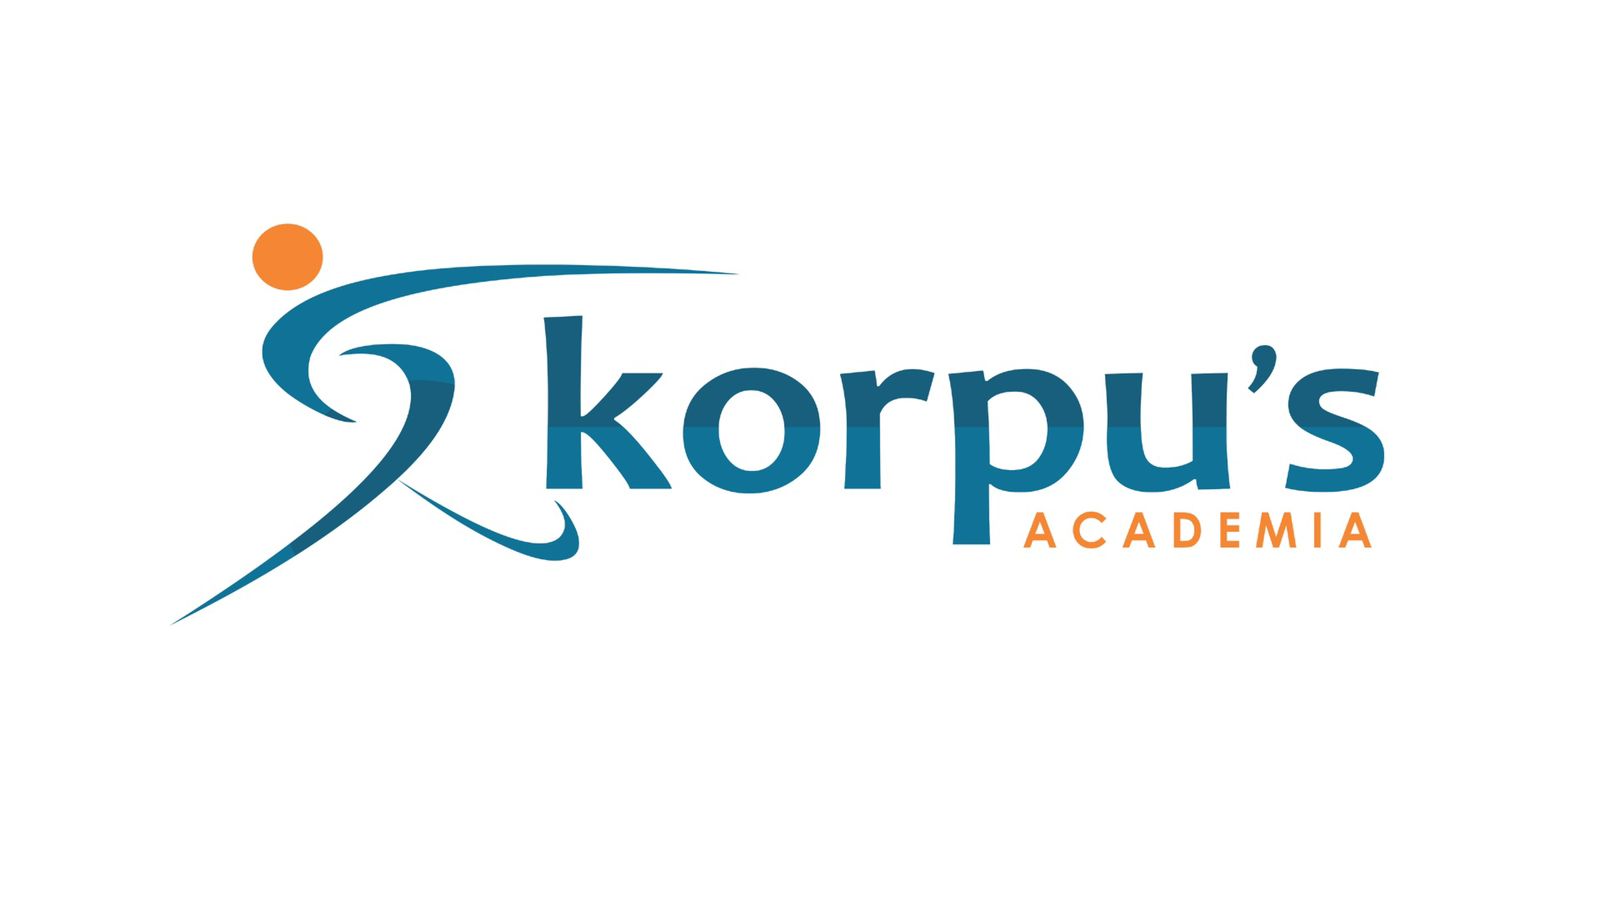 Korpus Academia